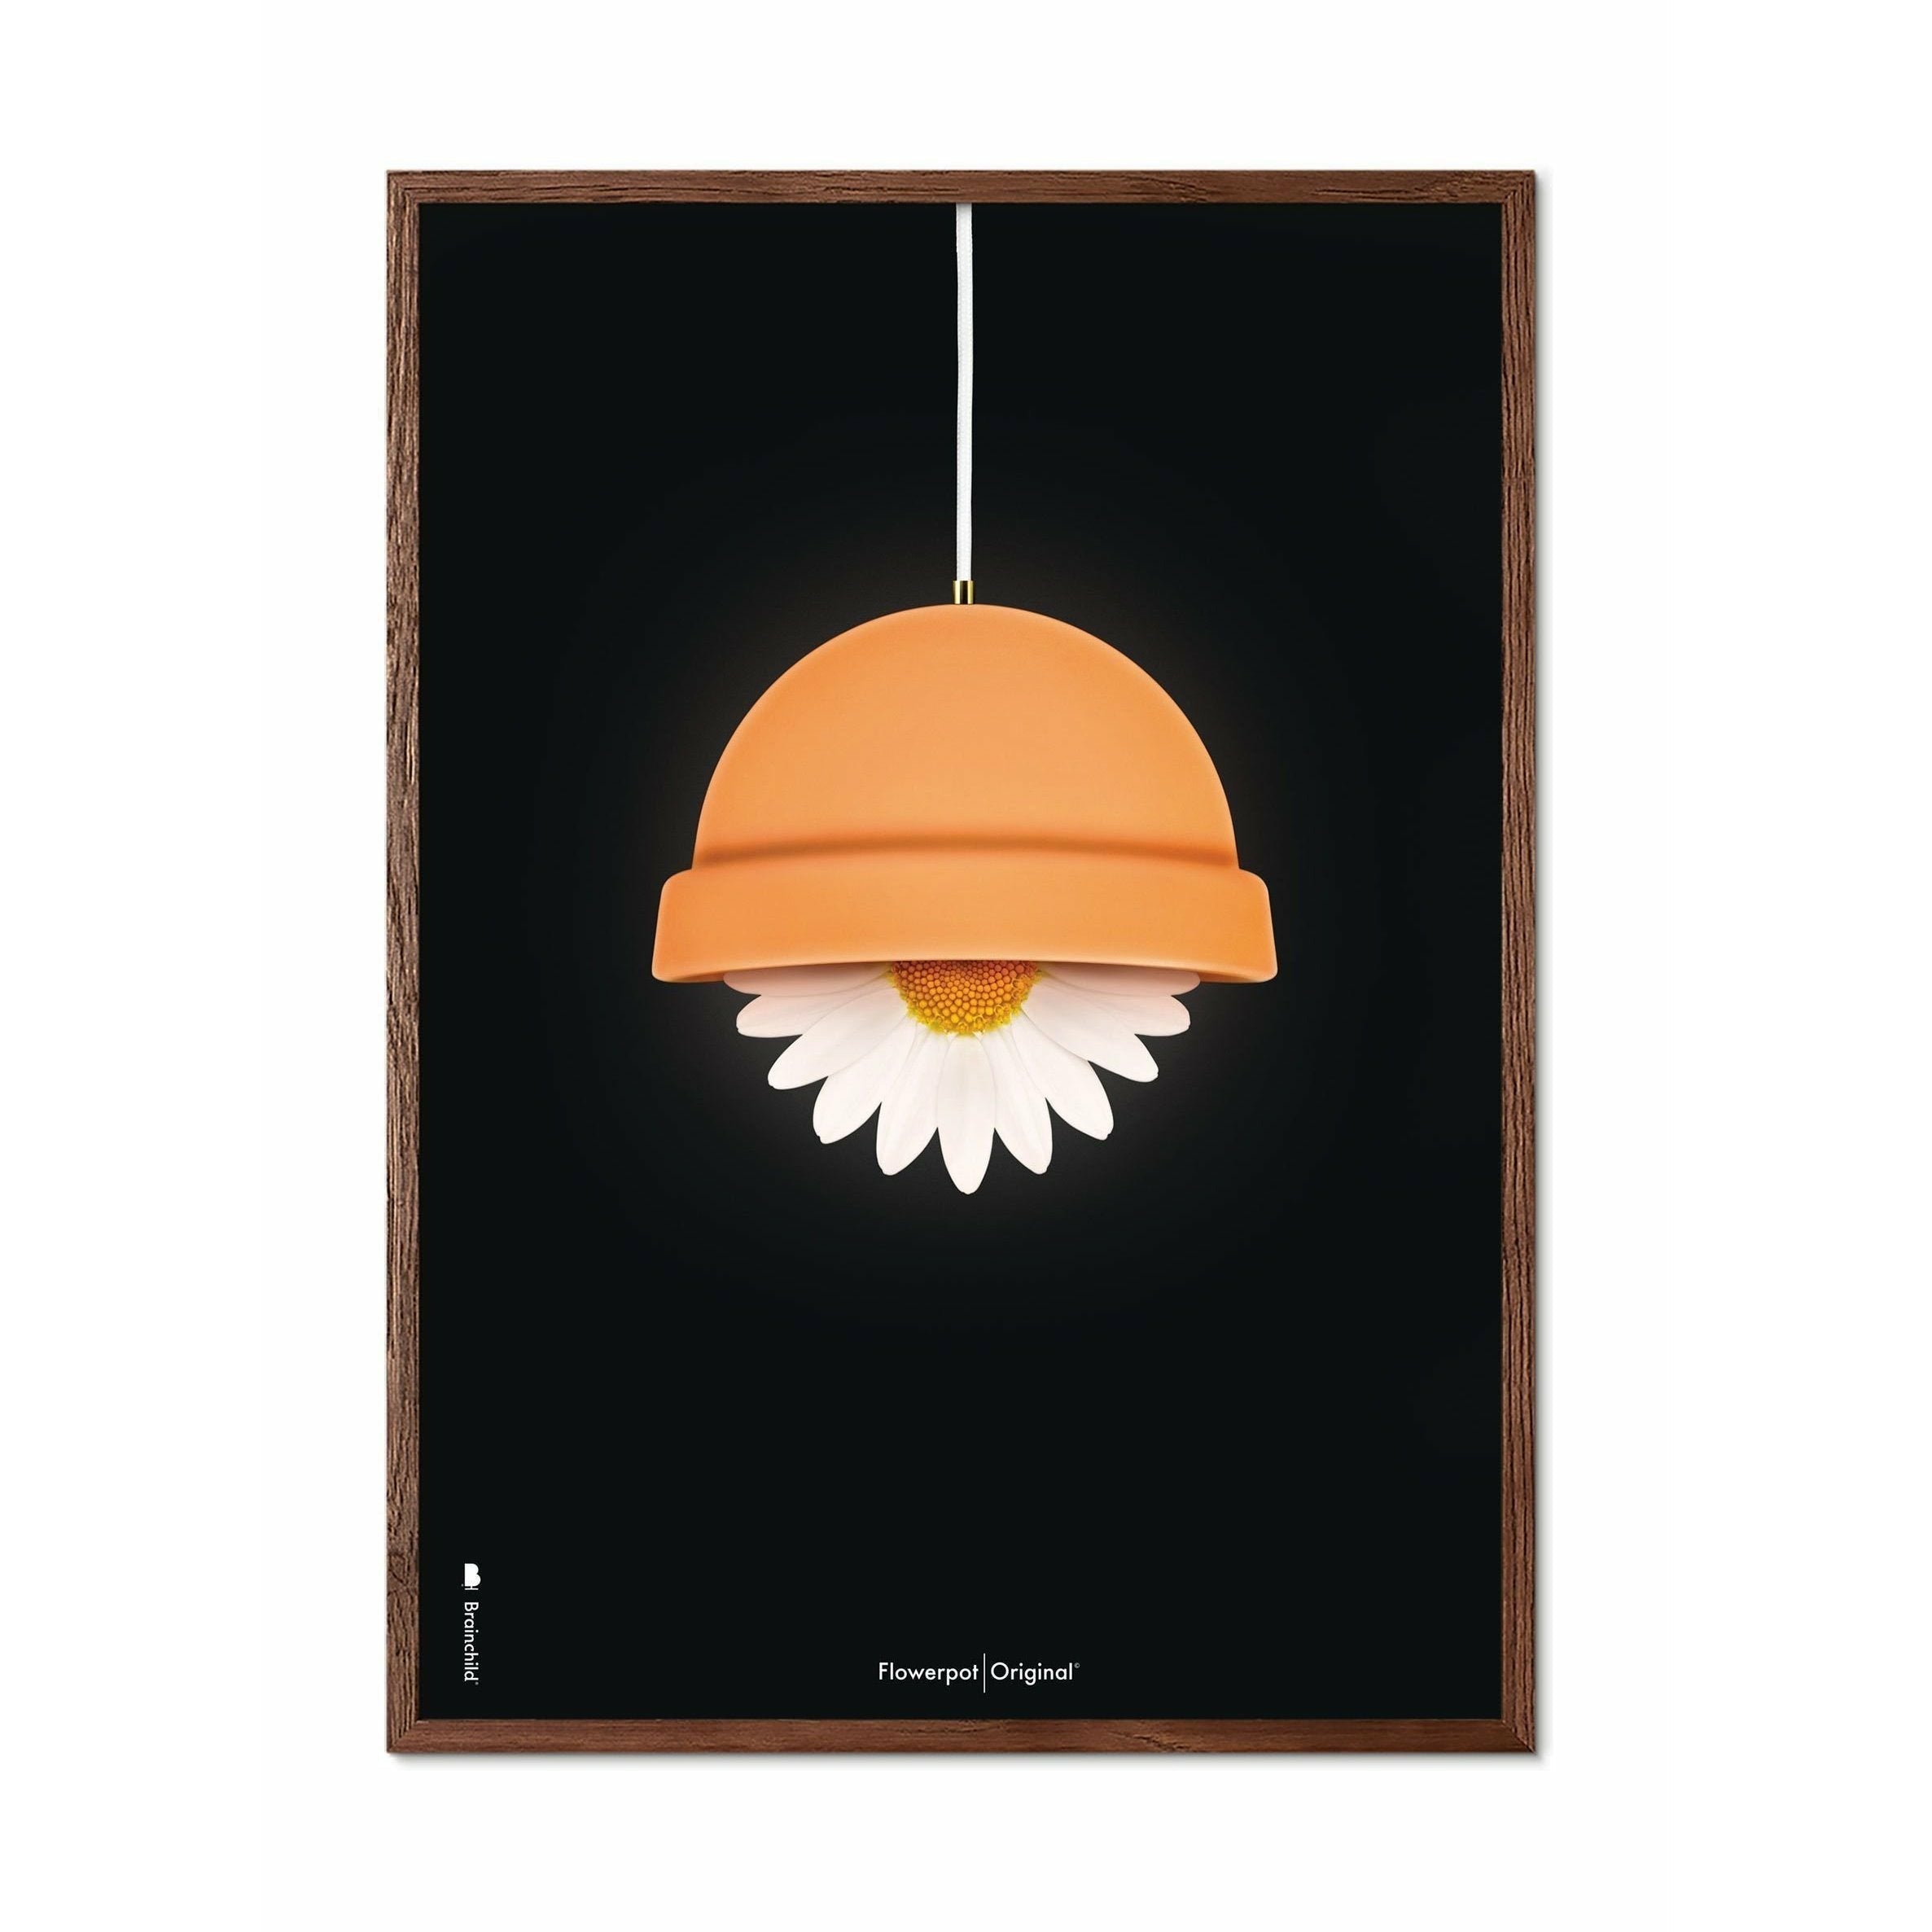 Brainchild Flowerpot Klassisk Plakat, Ramme I Mørkt Træ 30X40 Cm, Sort Baggrund